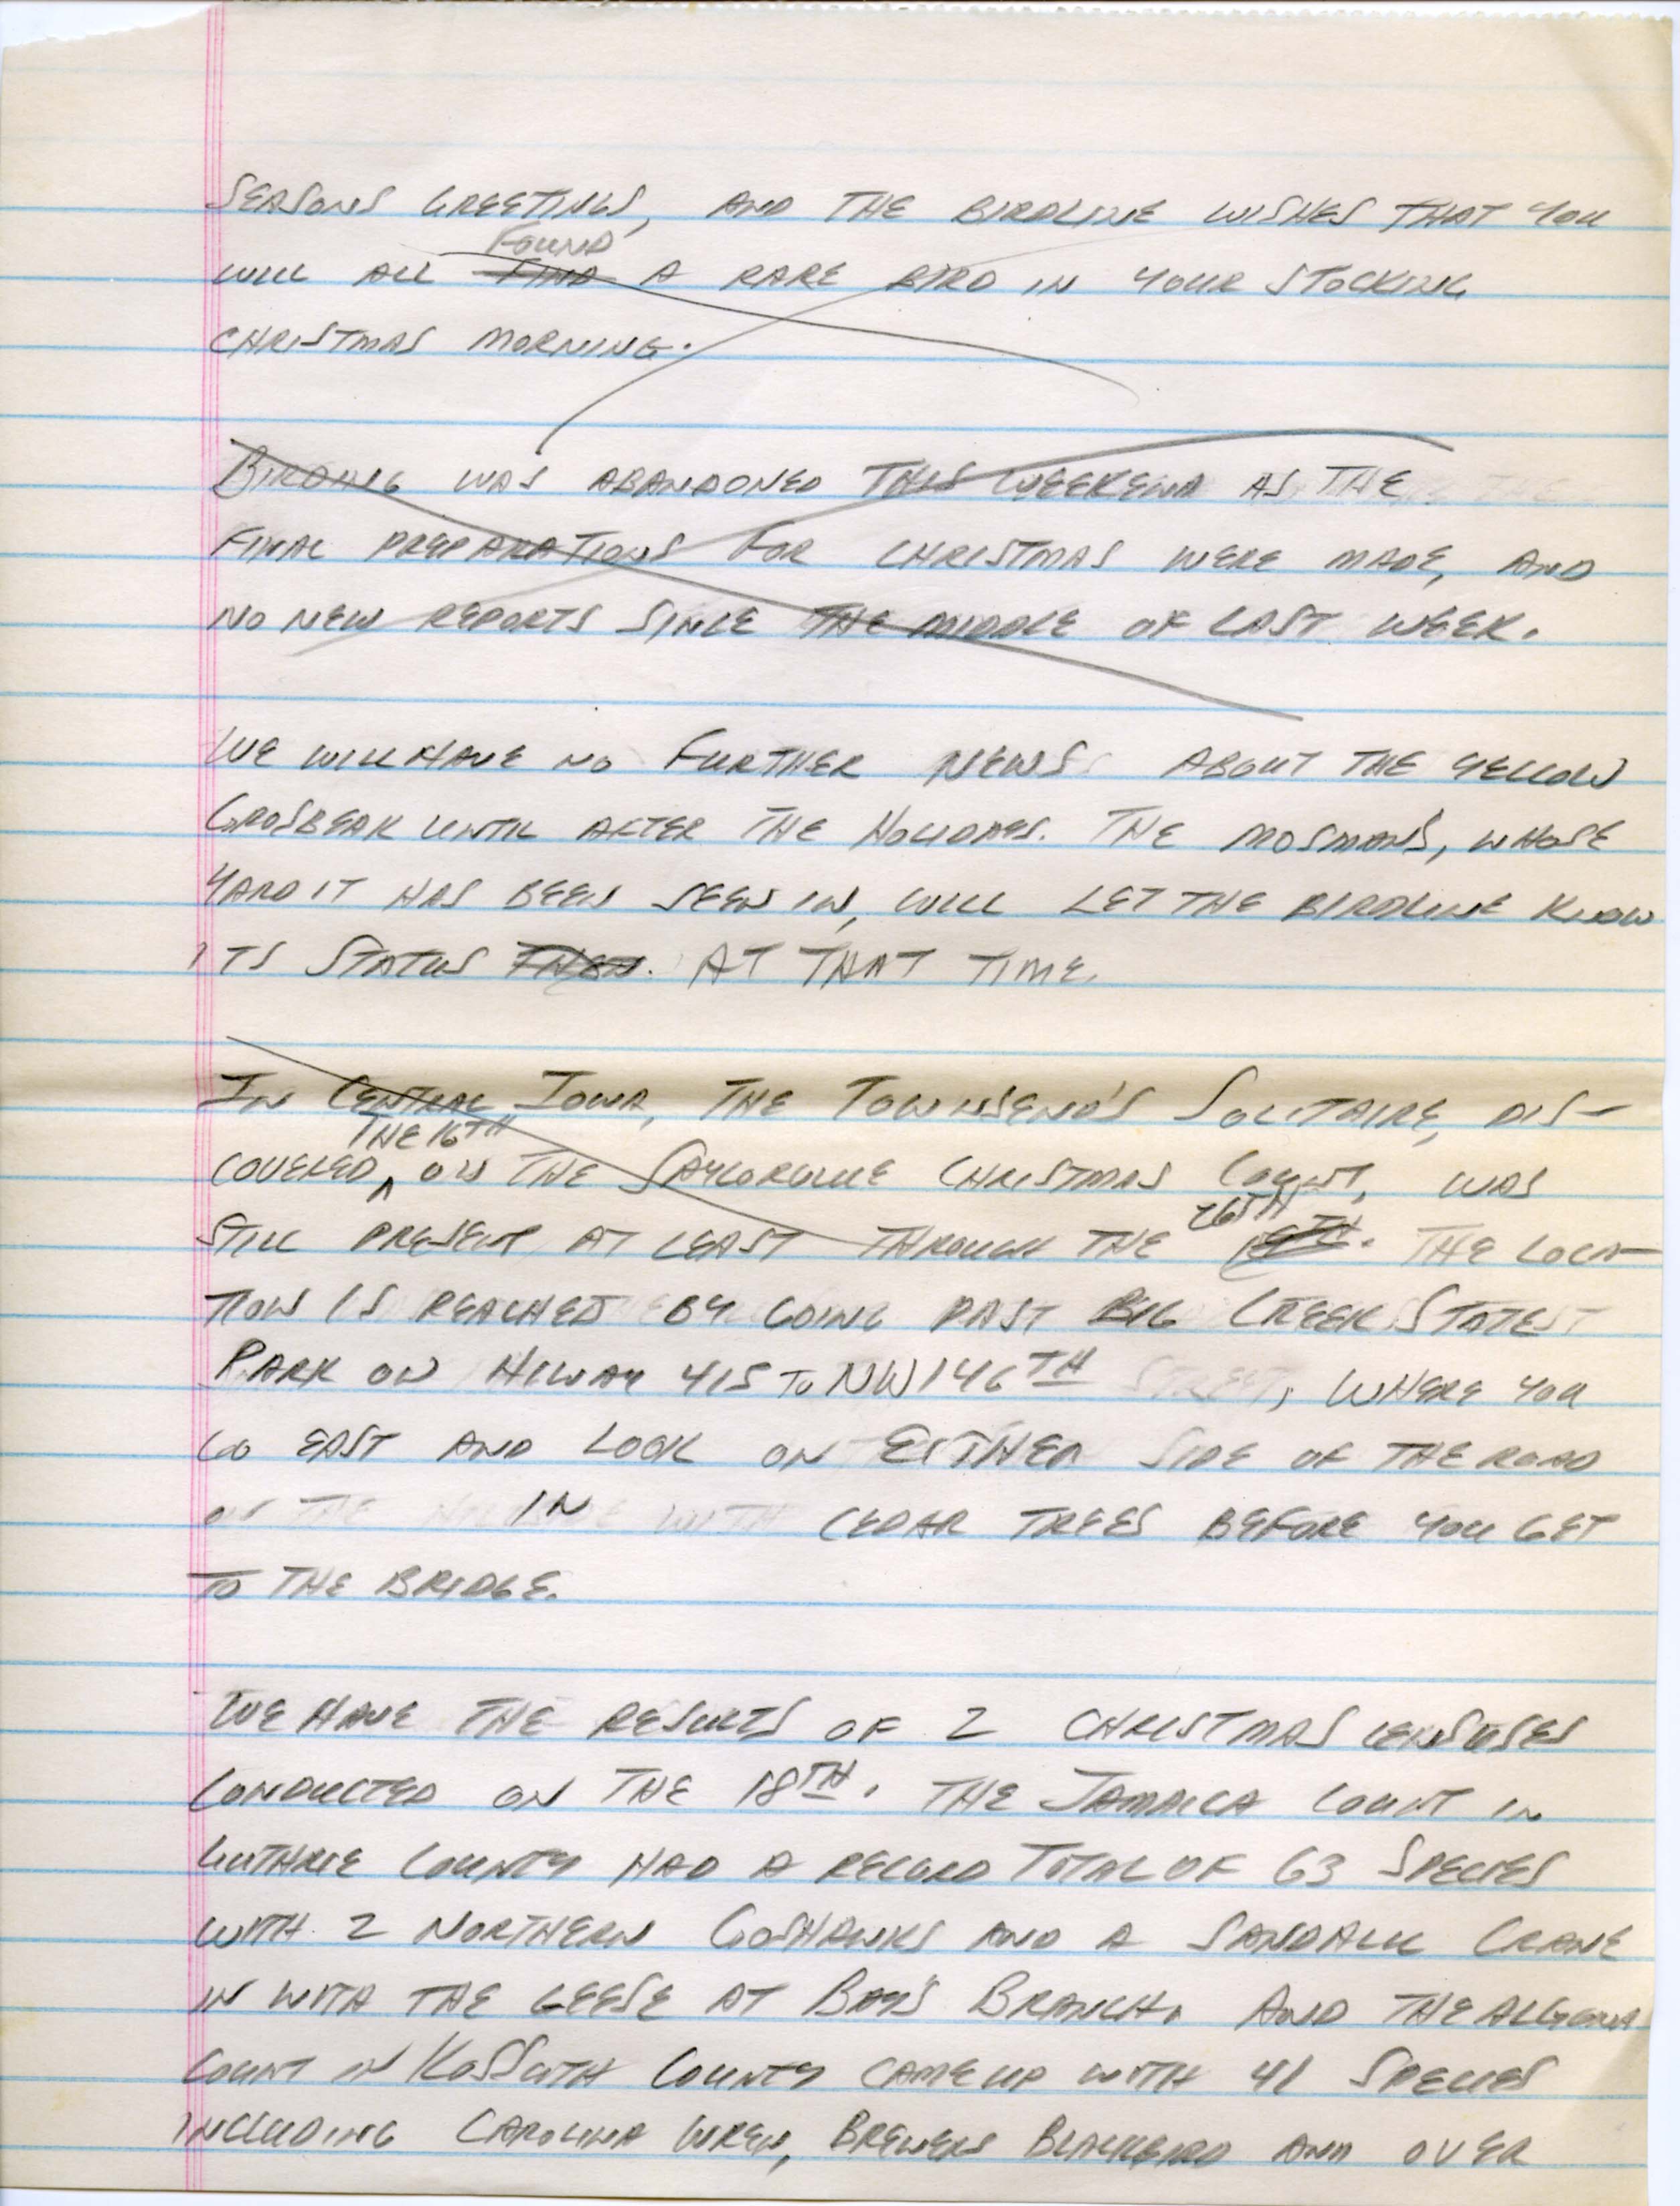 Iowa Birdline update, December 24, 1990 notes